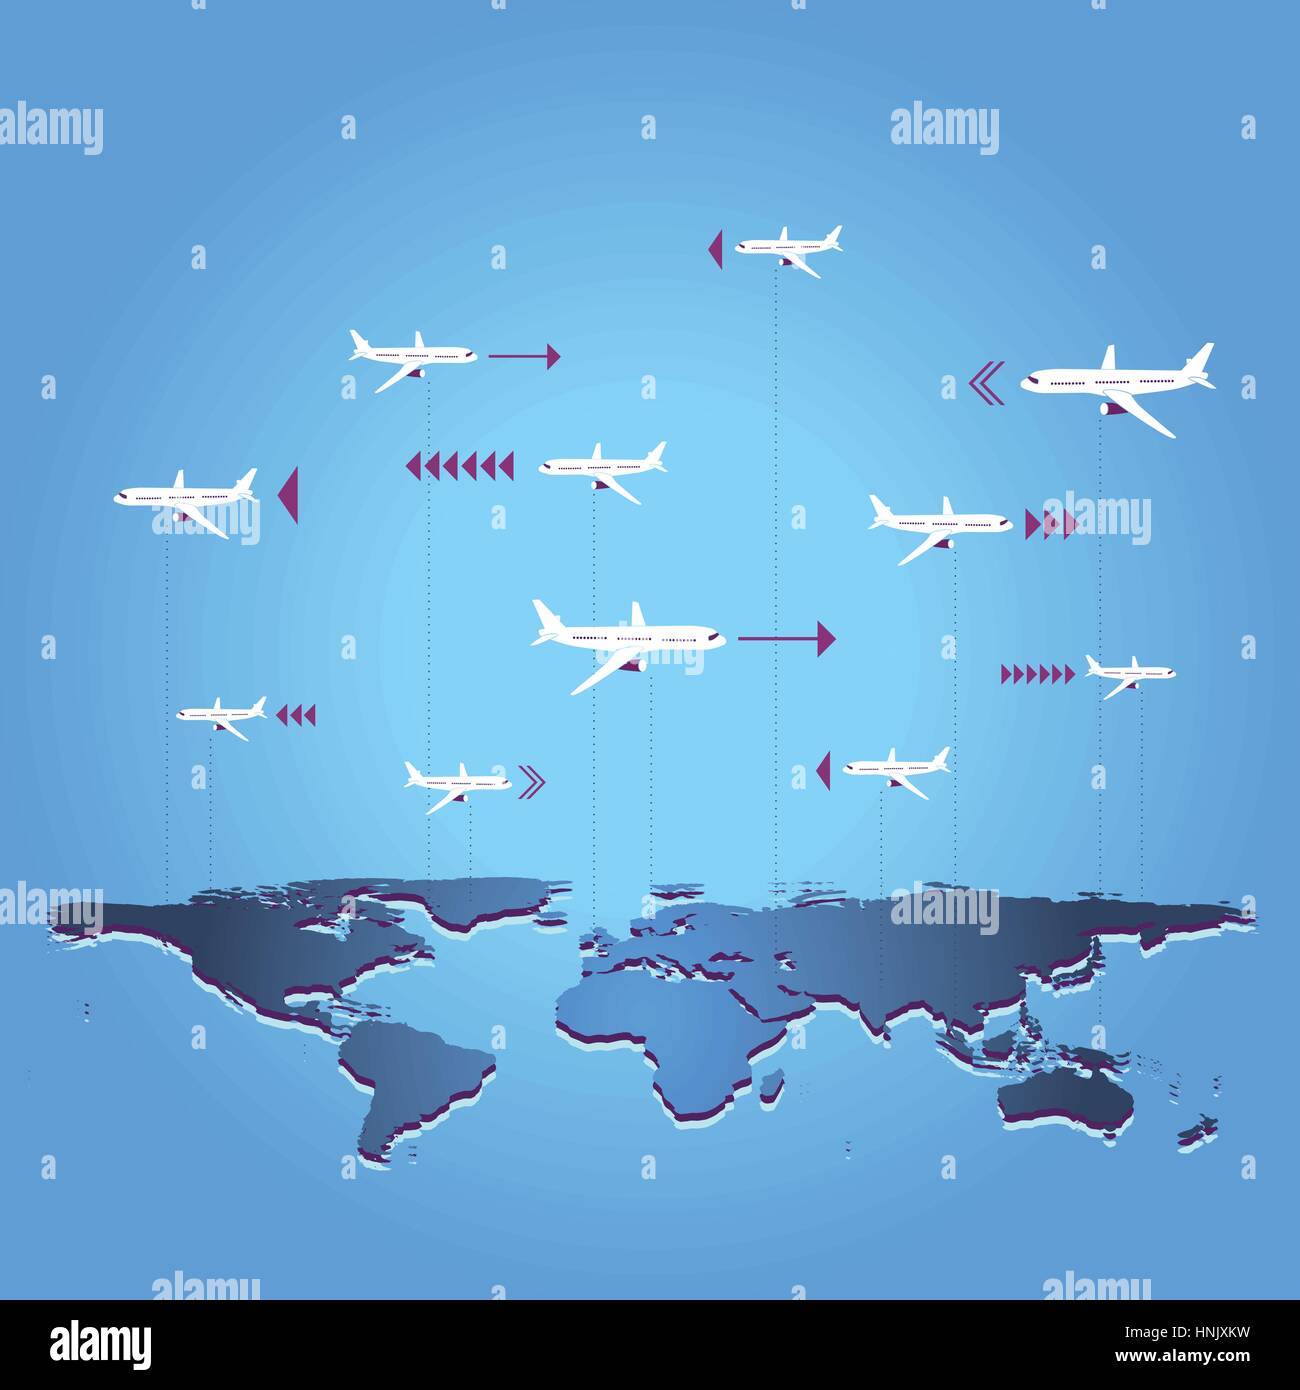 World Travel / destination recherche. Creative image vectorielle avec avion en l'air au-dessus de la Terre. Illustration de Vecteur